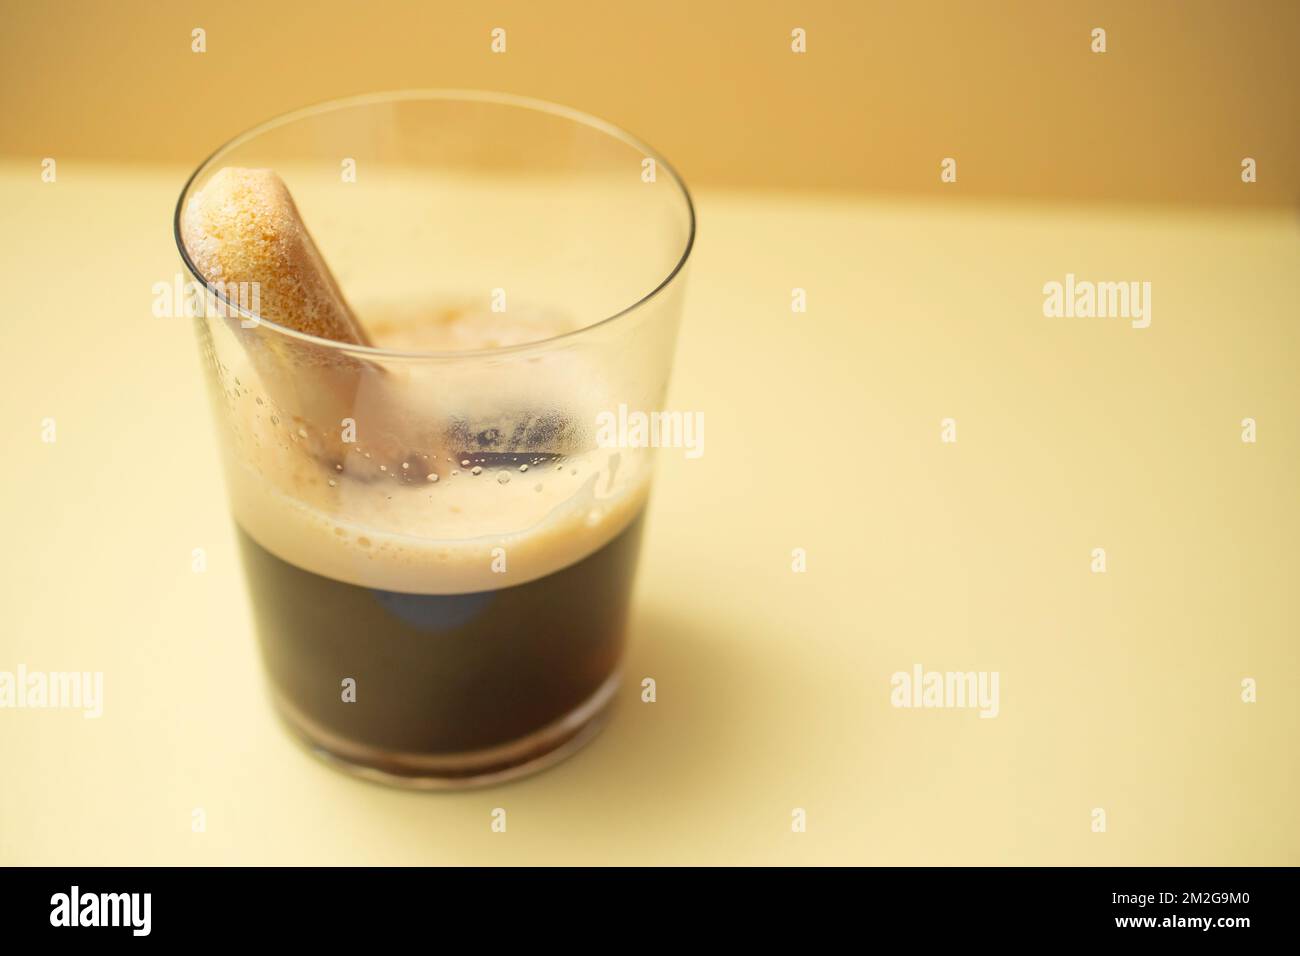 Galleta ladyfinger esponjosa sumergida en café espresso, en un vaso transparente, sobre fondo de color crema. Enfoque suave de primer plano. Foto de stock